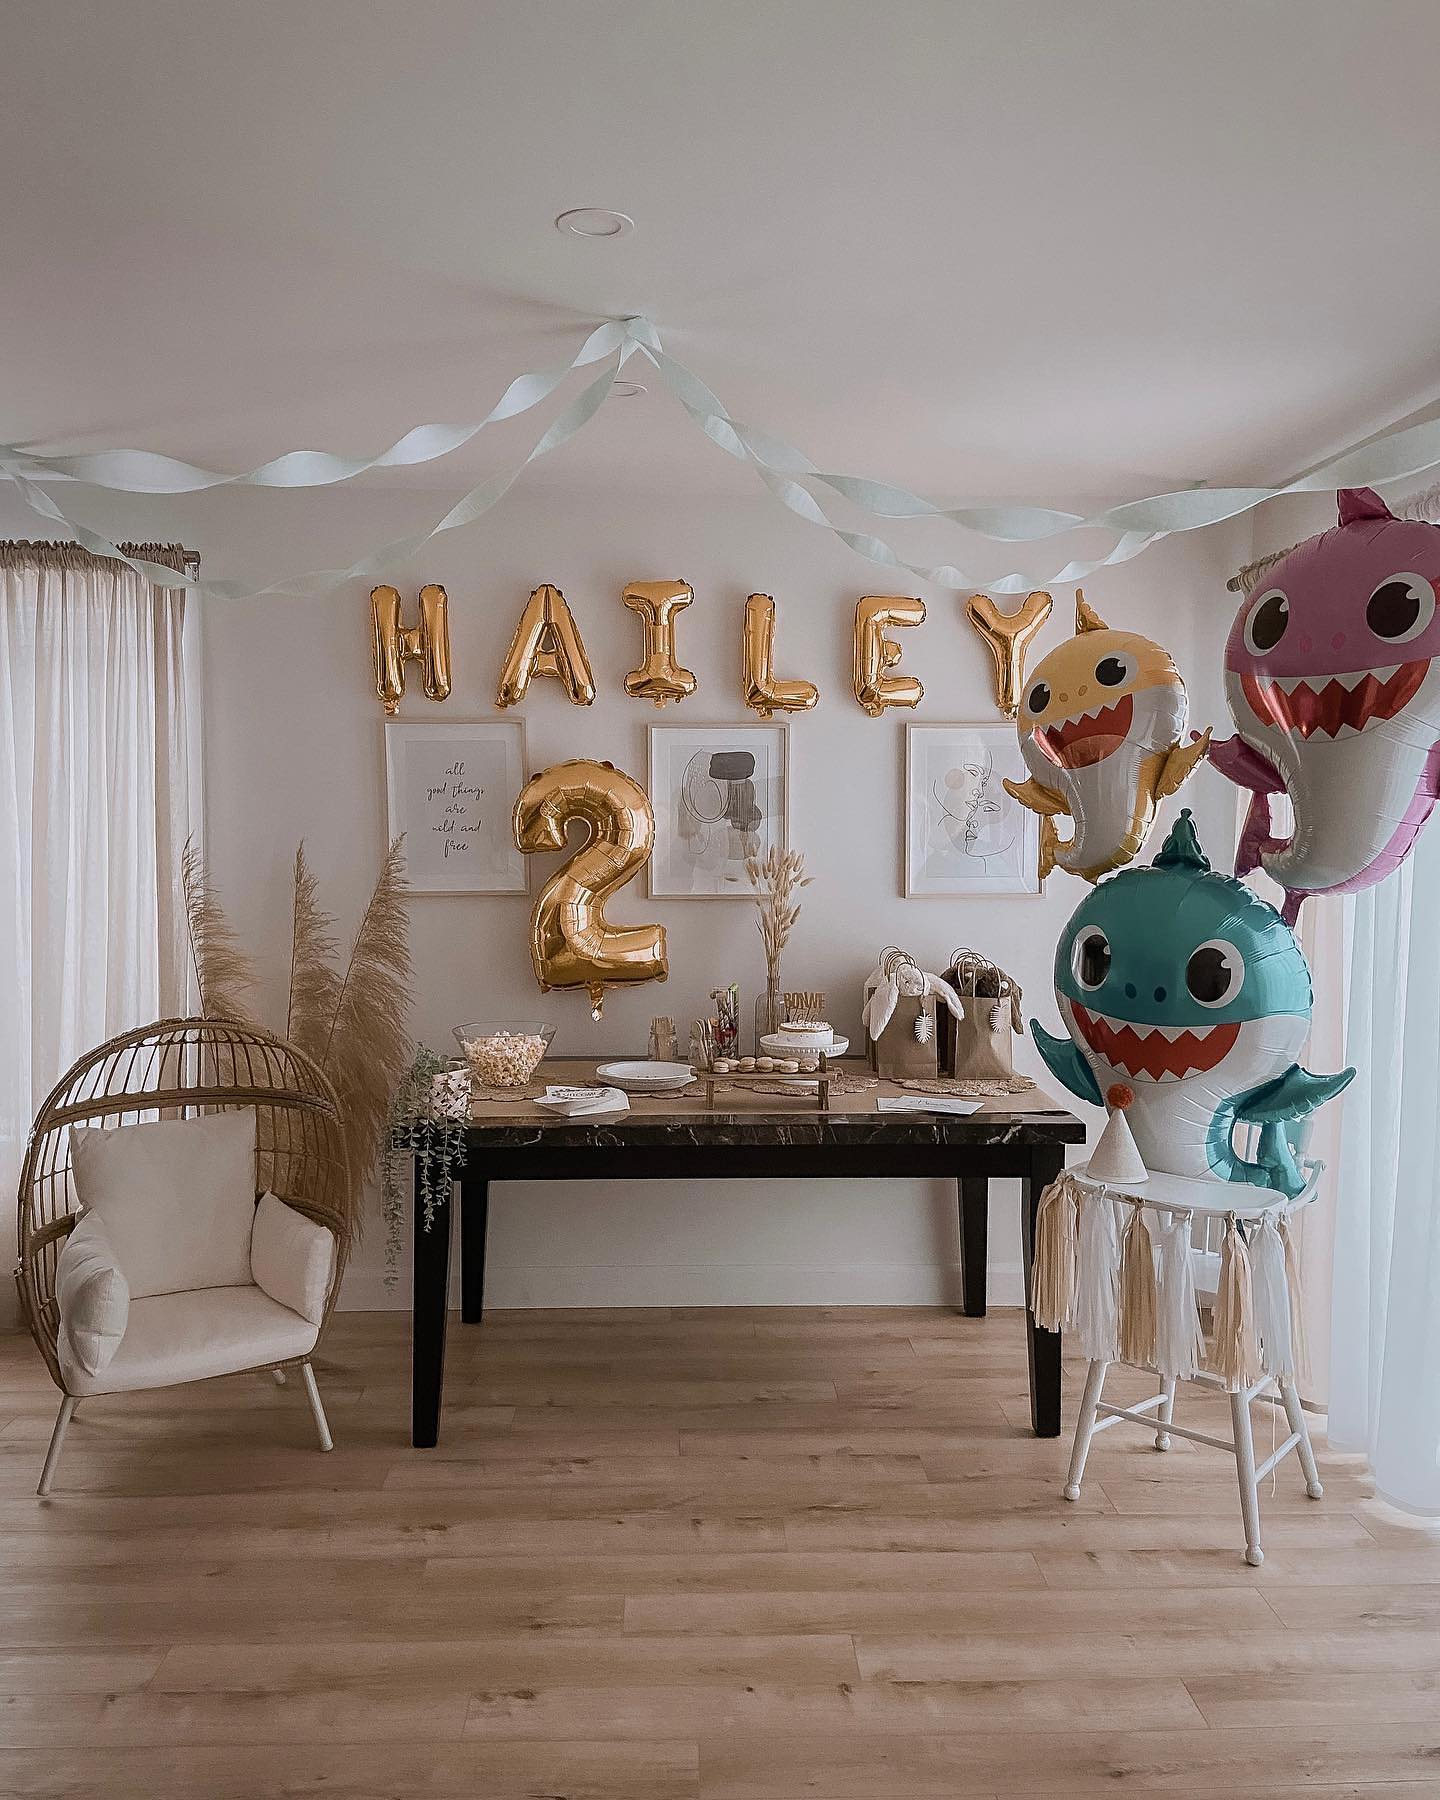 Baby Shark Birthday Party Ideas